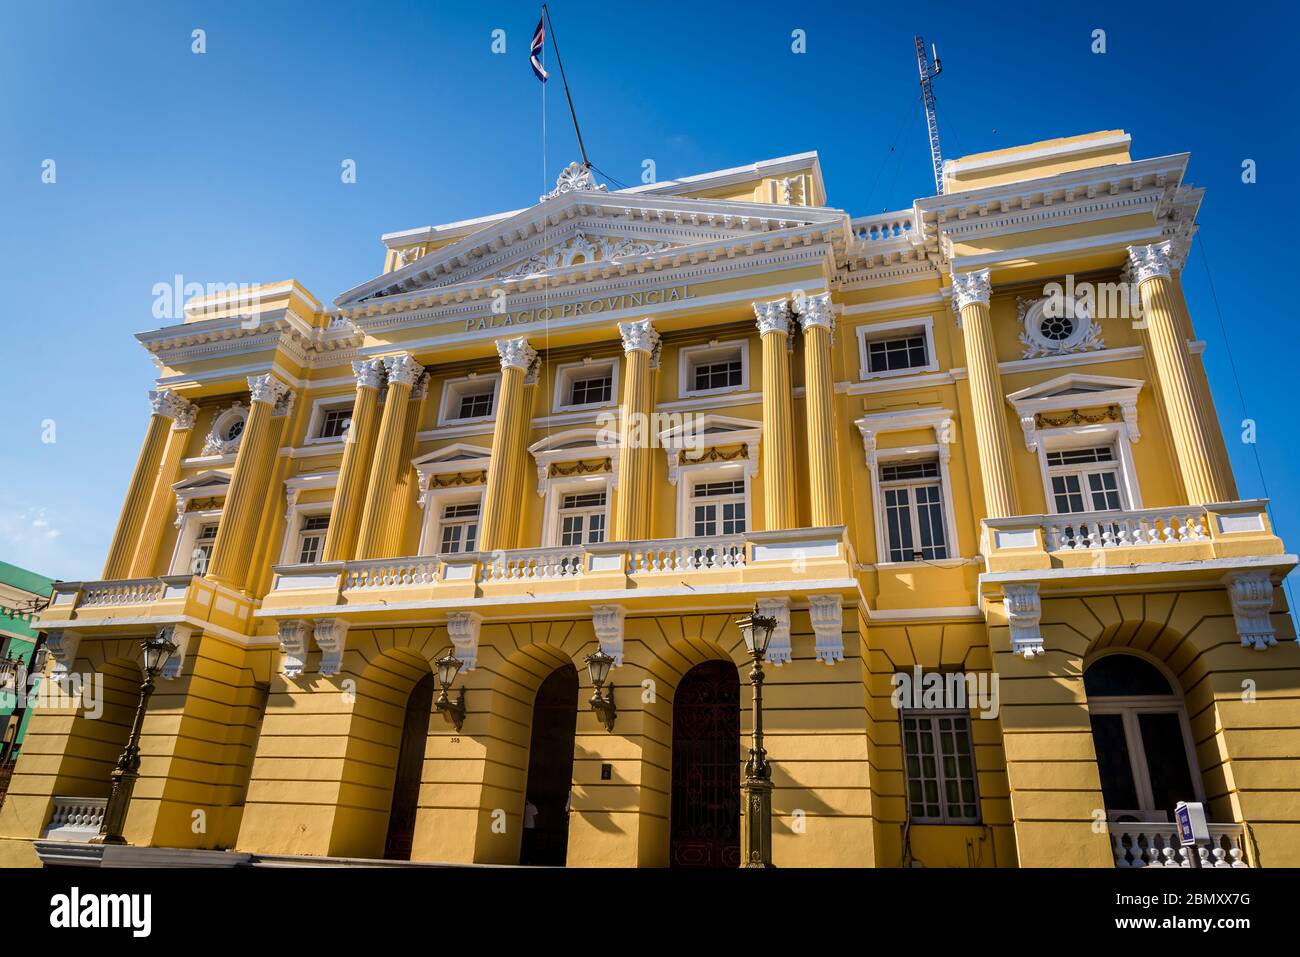 Newly refurbished Palacio de Gobierno Provincial, Provincial government building, built in eclectic style in 1920s, Santiago de Cuba, Cuba Stock Photo